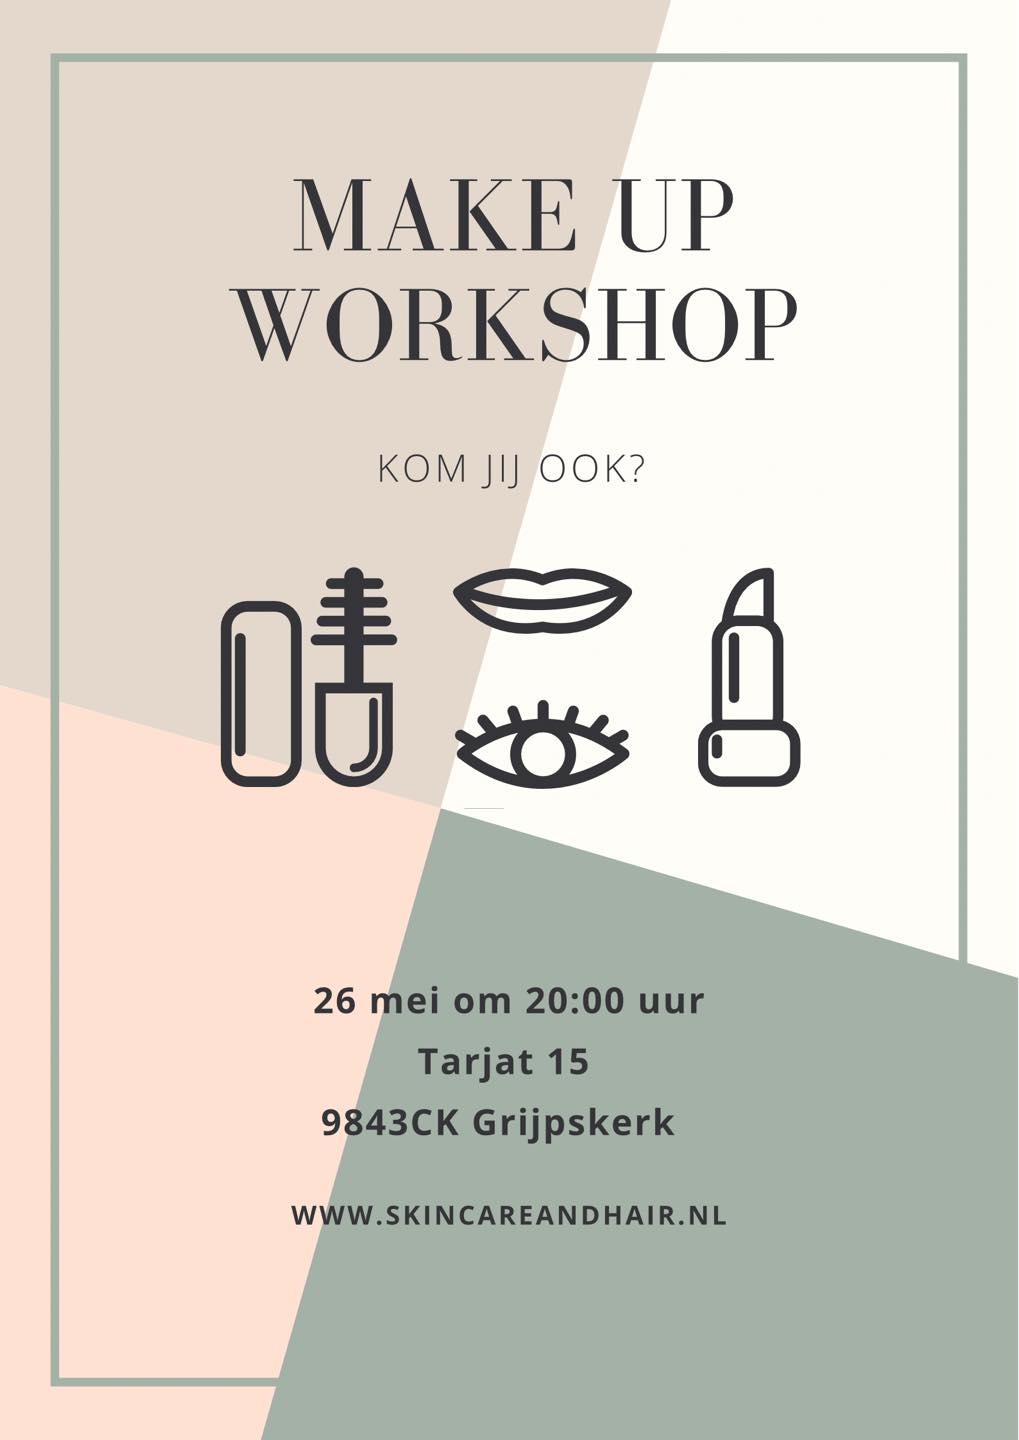 workshop flyer